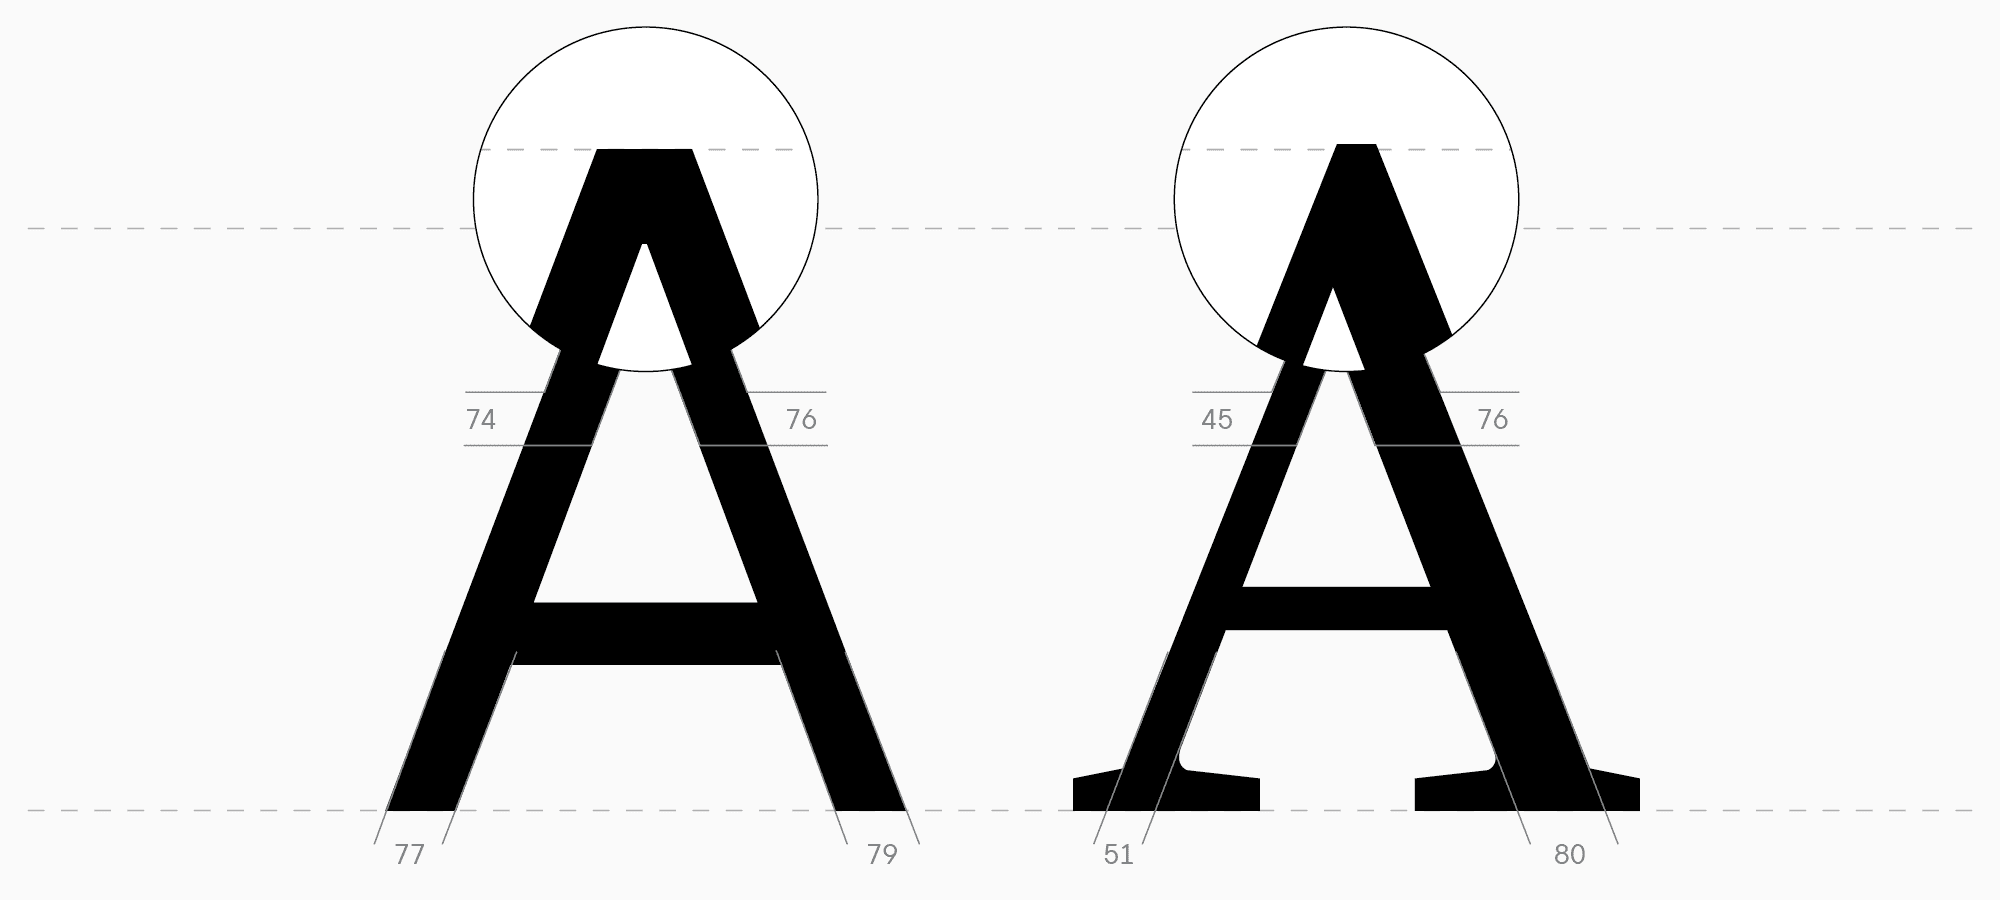 УниверситеТТ: Урок 7. Отрисовка базовой латиницы: высота знаков, контраст и оптические размеры 